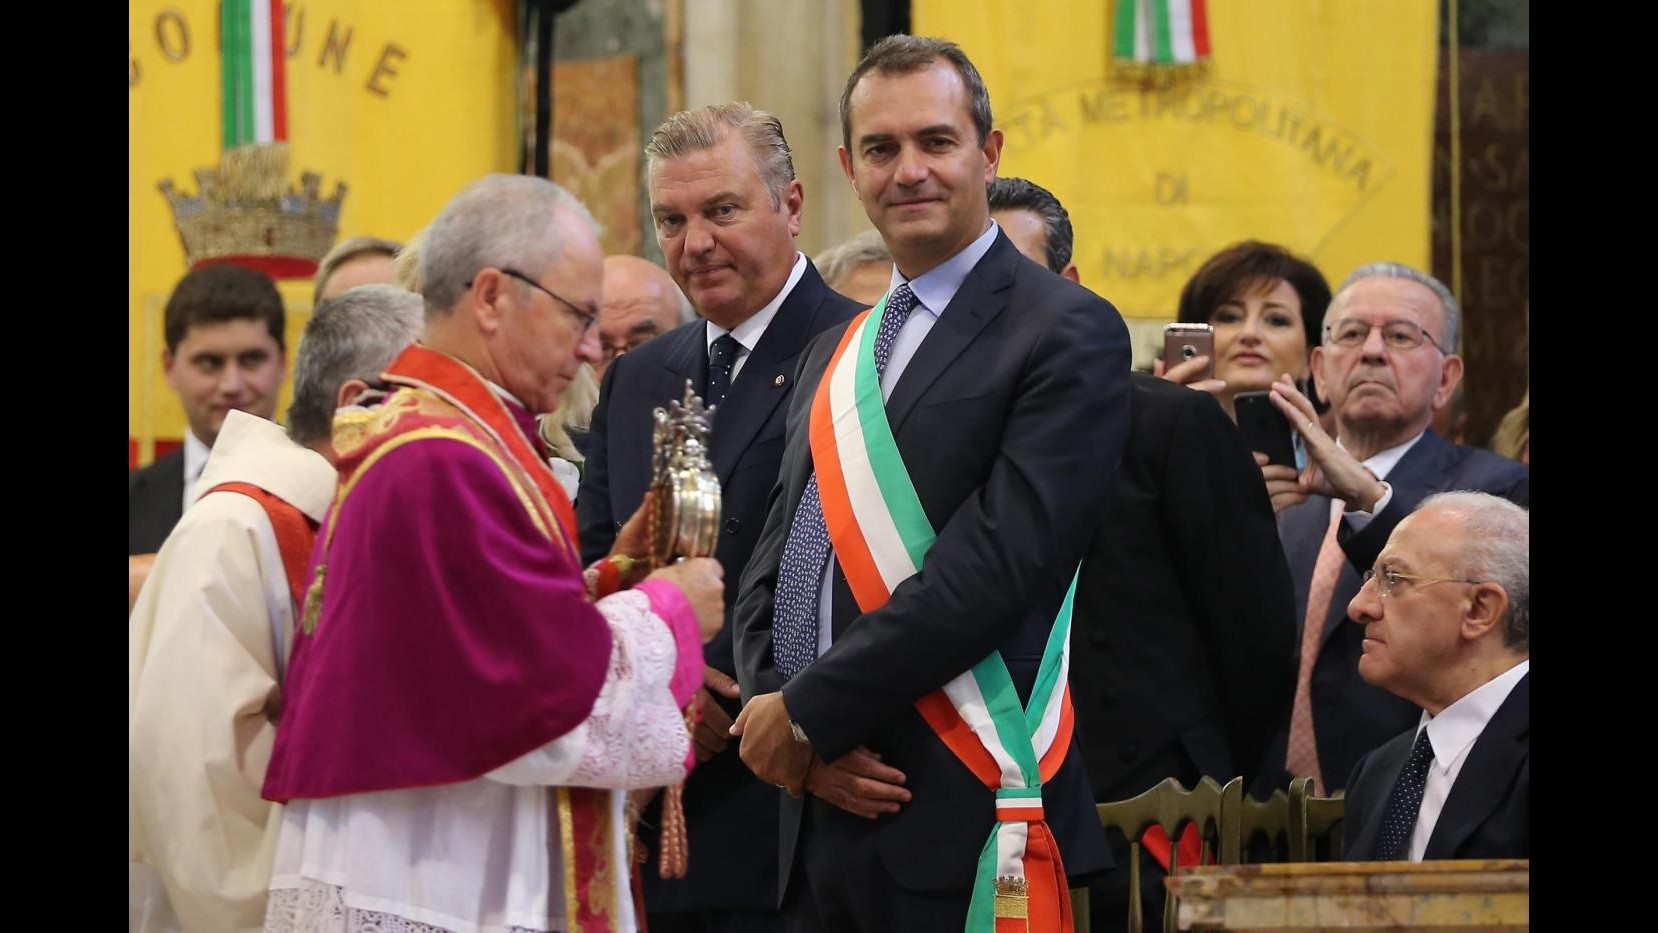 FOTO Napoli, si ripete miracolo di San Gennaro: sciolto il sangue